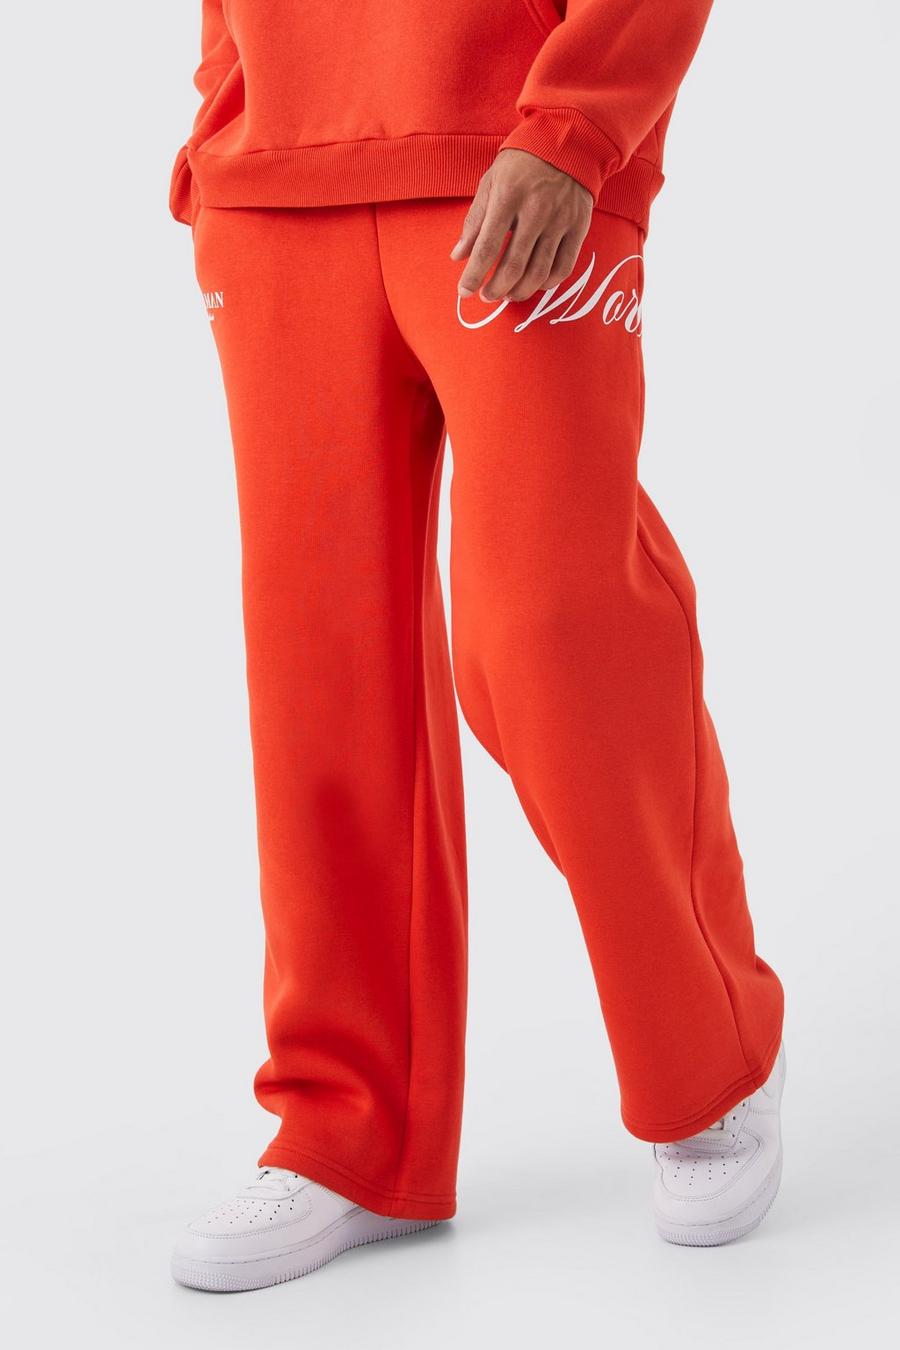 Pantaloni tuta a gamba ampia con stampa e laccetti spessi, Coral